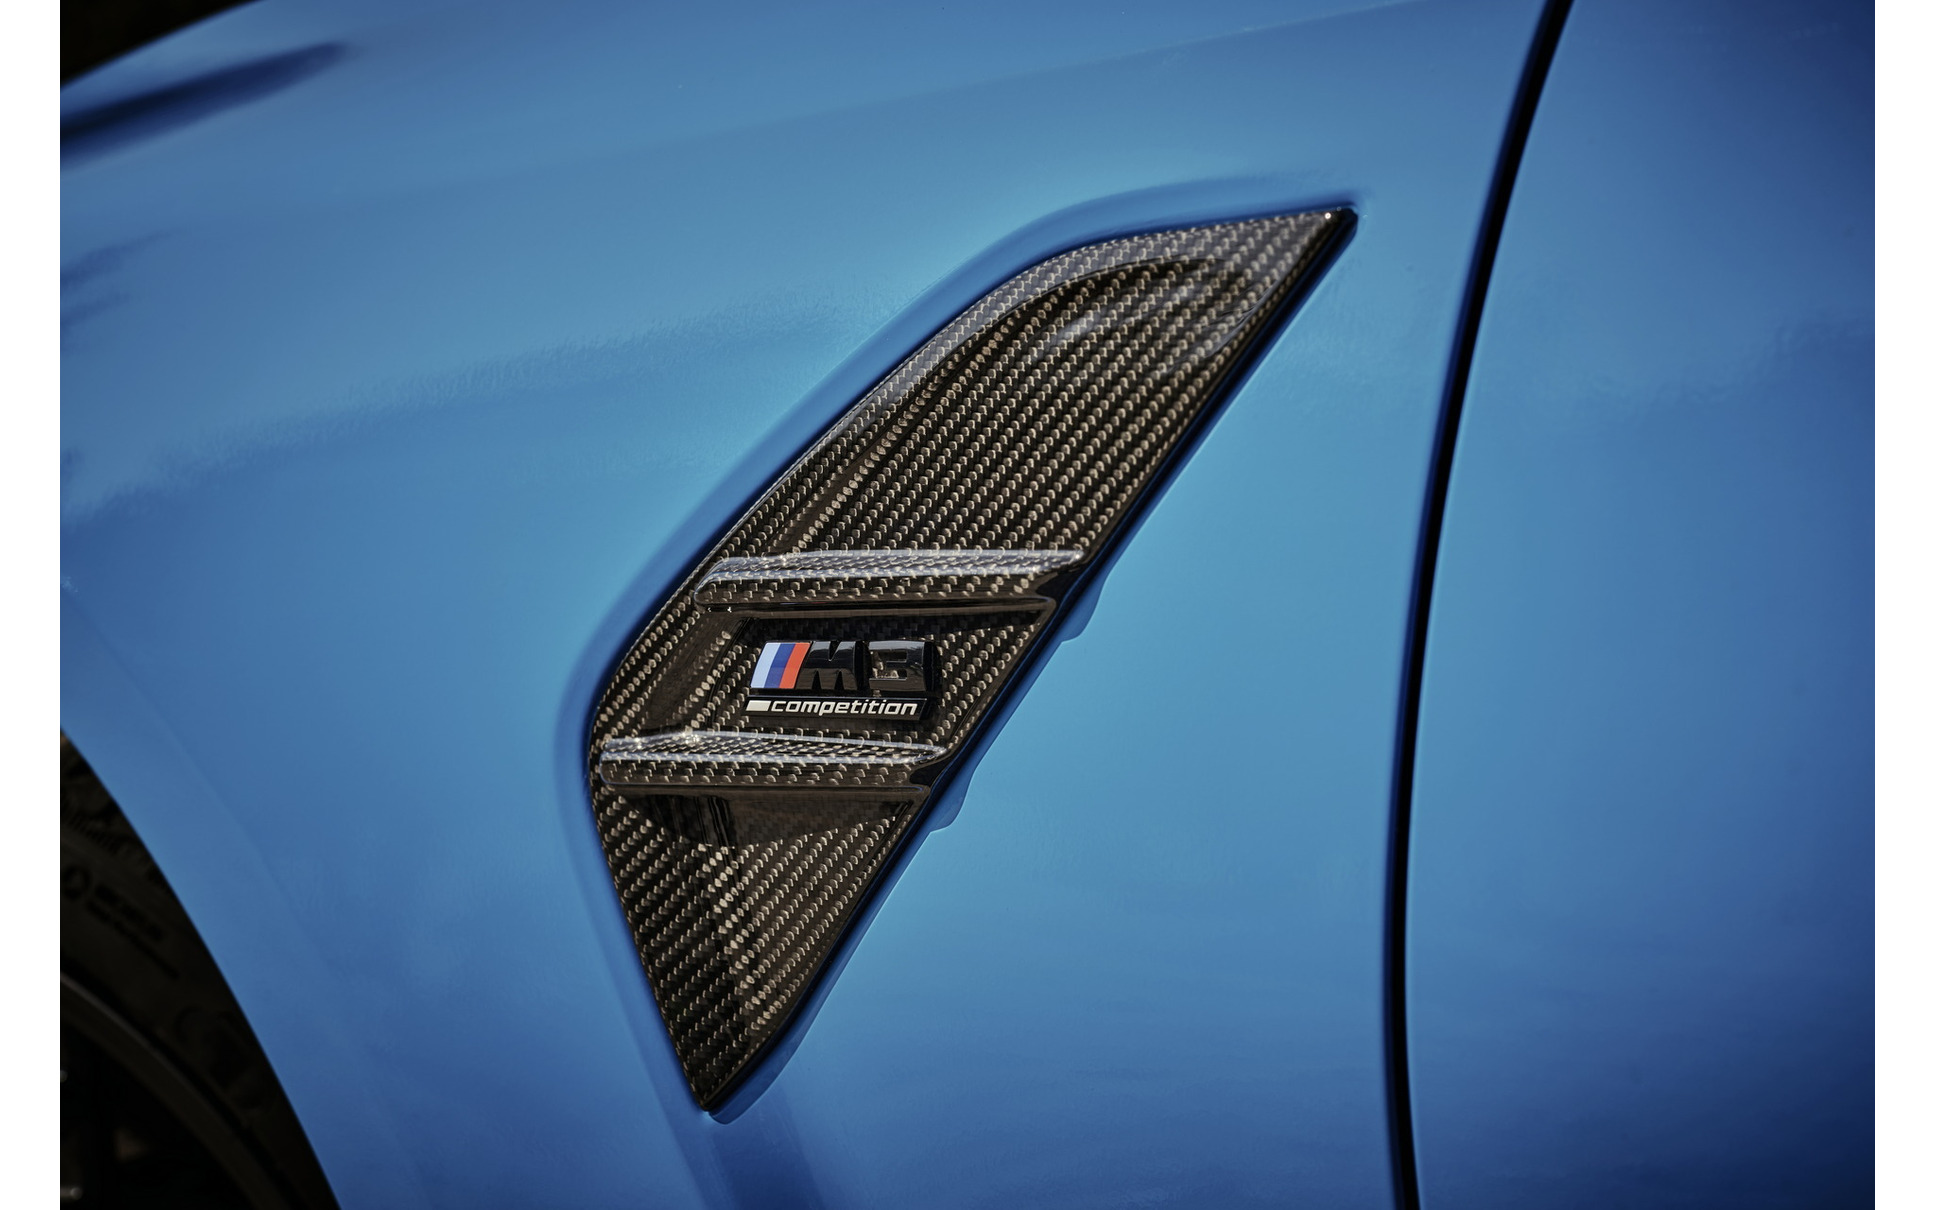 BMW M3 ツーリング の「Mパフォーマンスパーツ」装着車